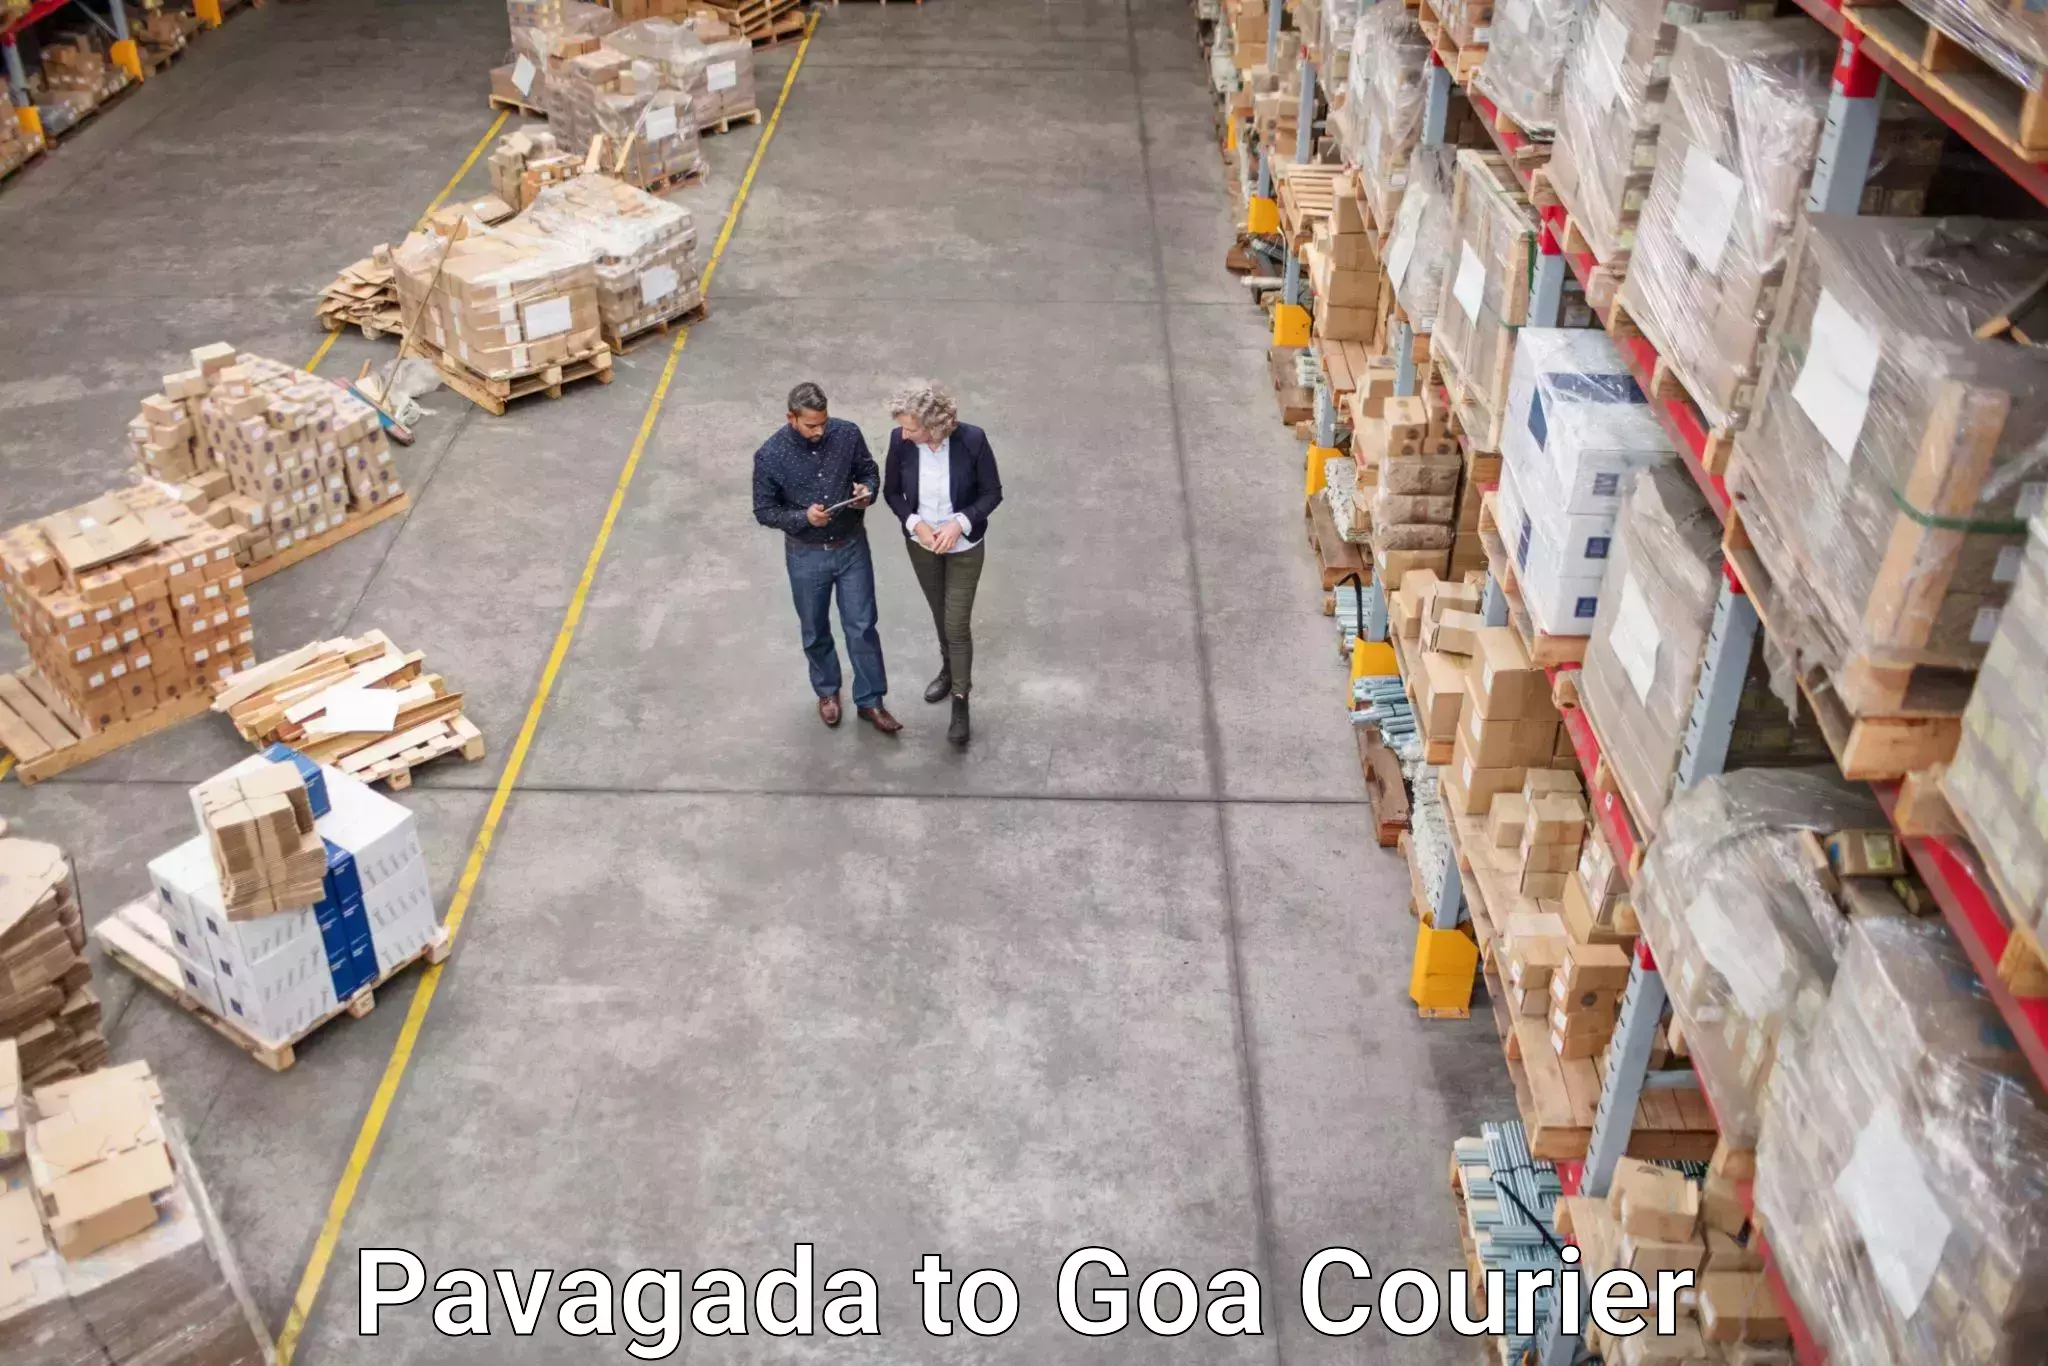 Courier dispatch services Pavagada to Vasco da Gama